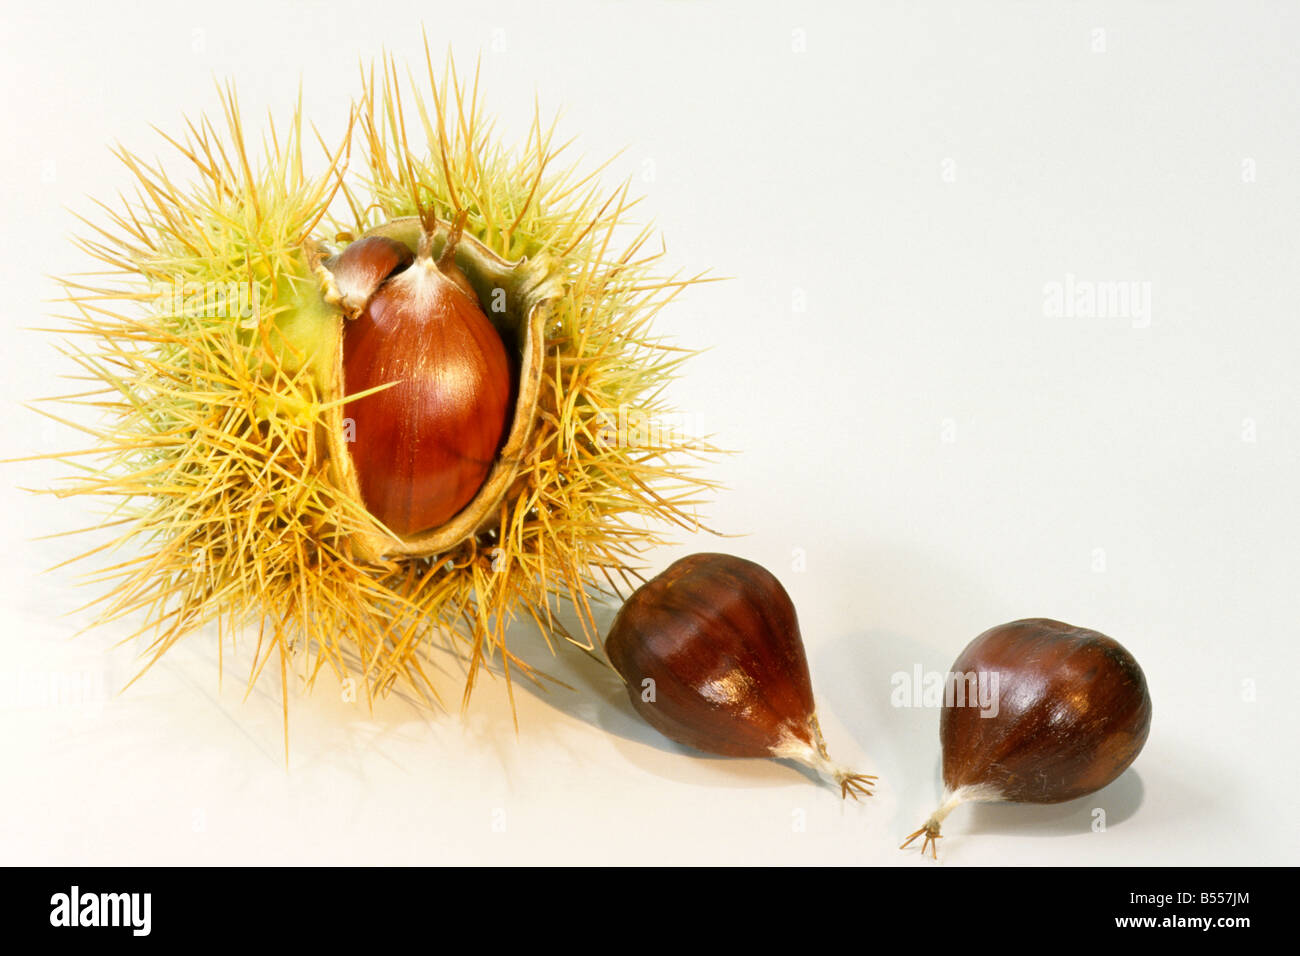 Spanish chestnut, le châtaignier (Castanea sativa), les châtaignes comestibles, studio photo Banque D'Images